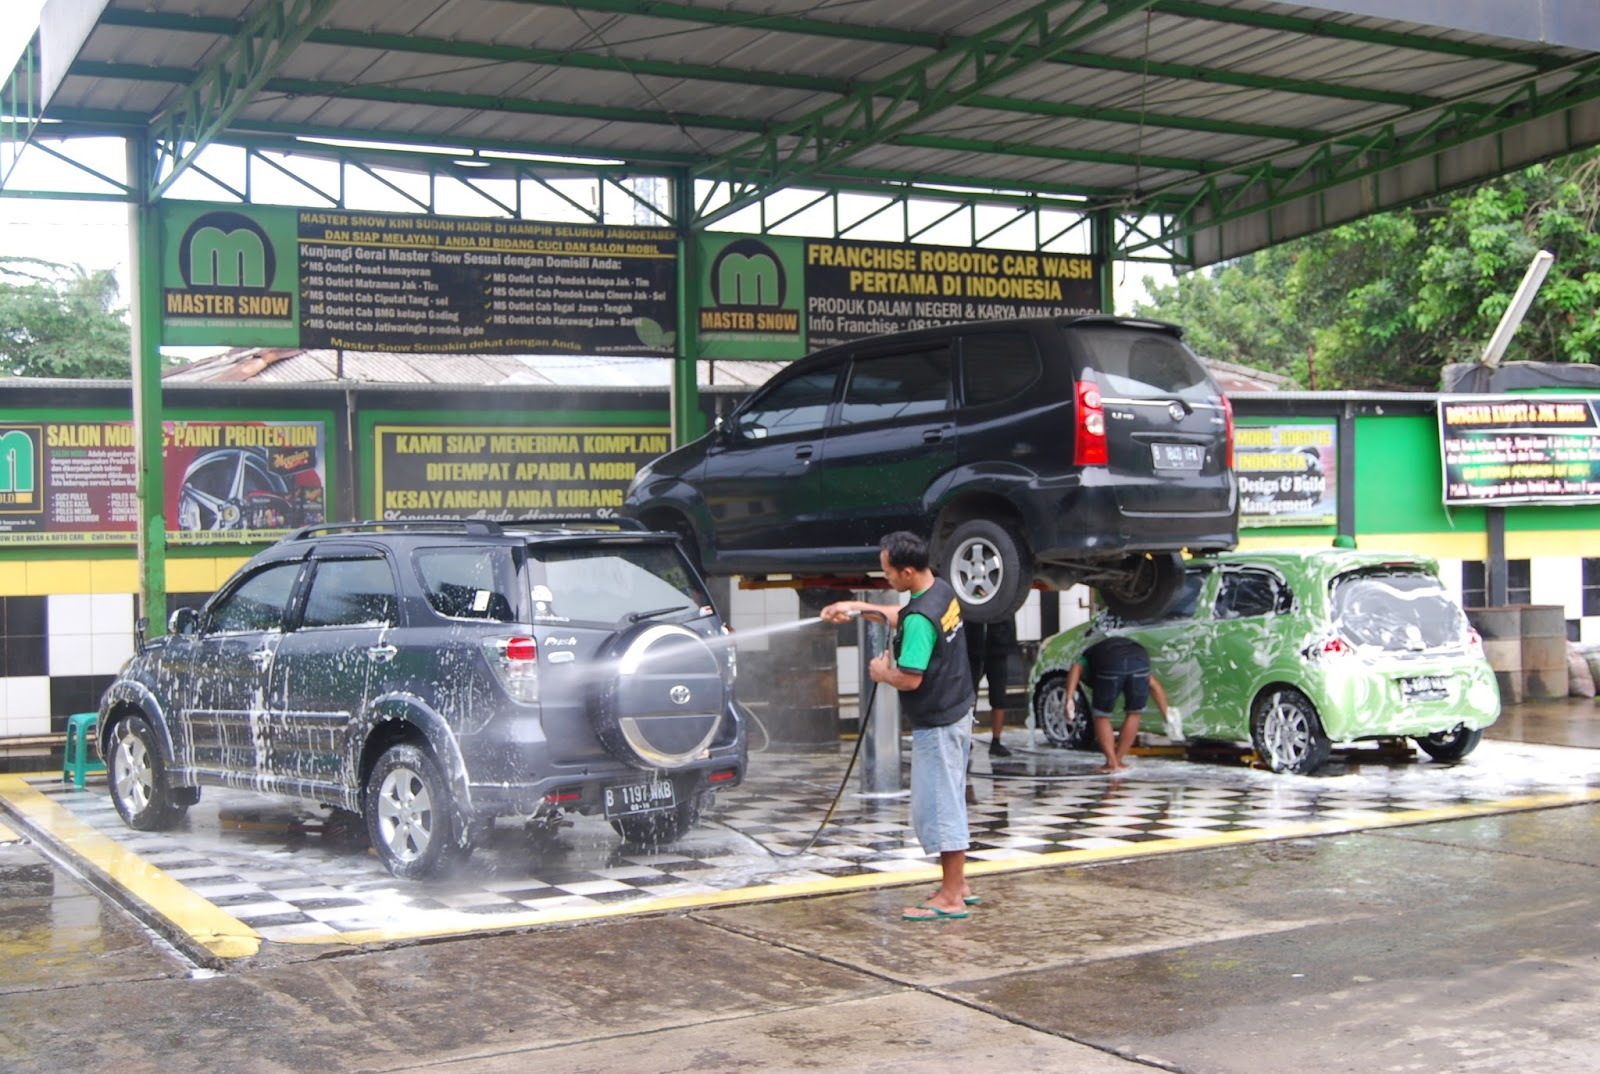 dịch vụ rửa xe tại Đà Nẵng